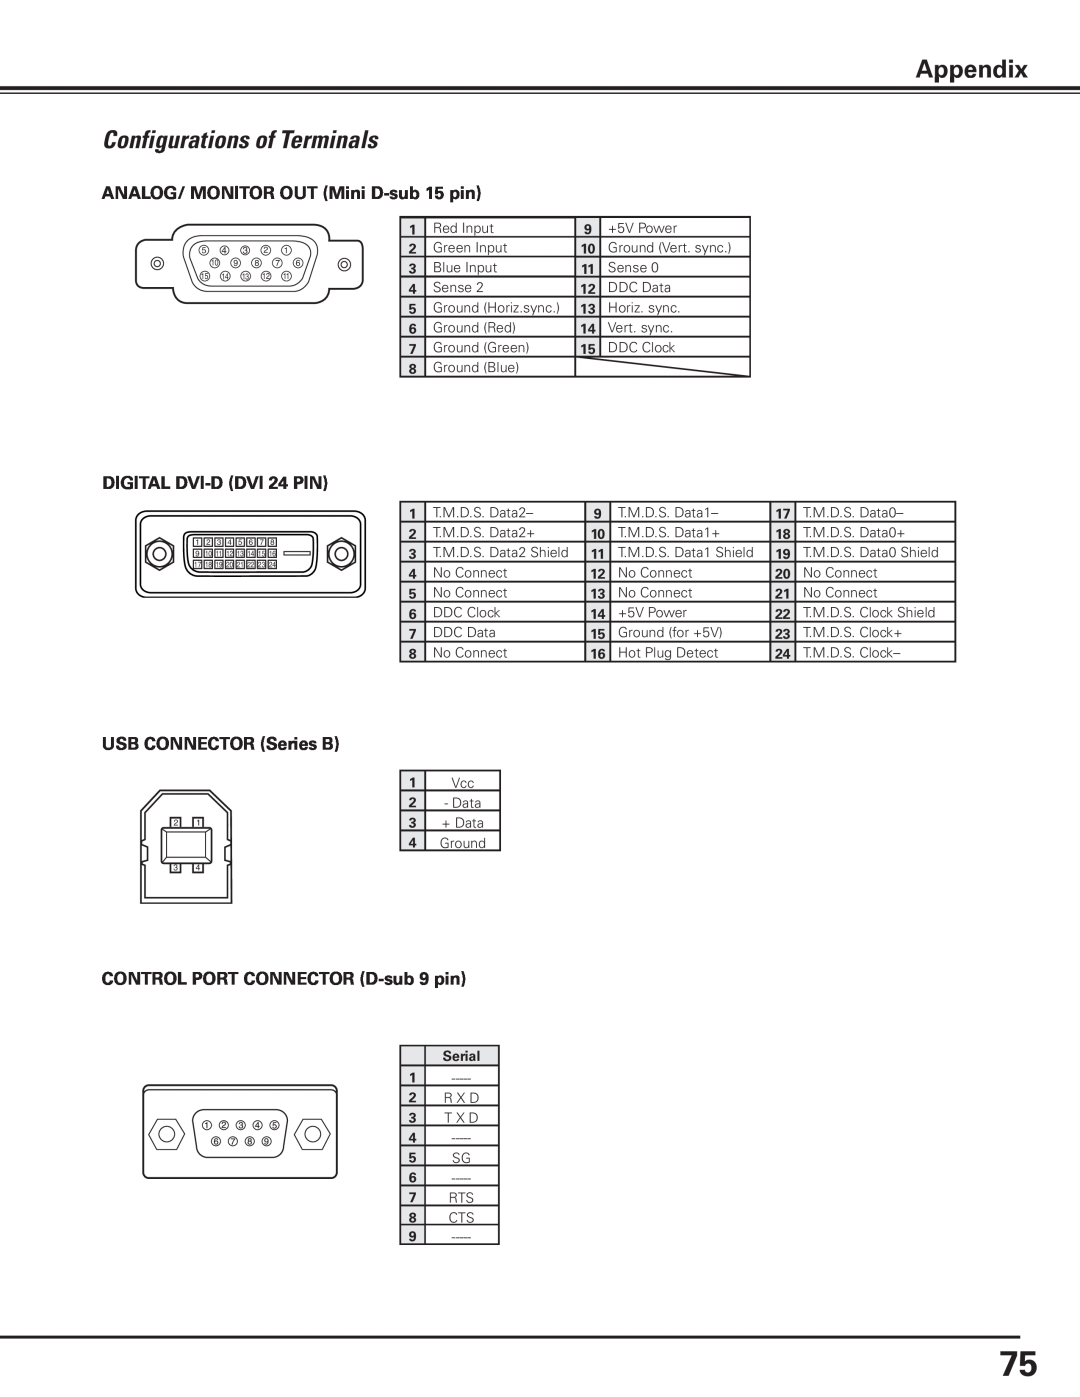 Canon 7585 manual Configurations of Terminals, Appendix, + Data, R X D, T X D 